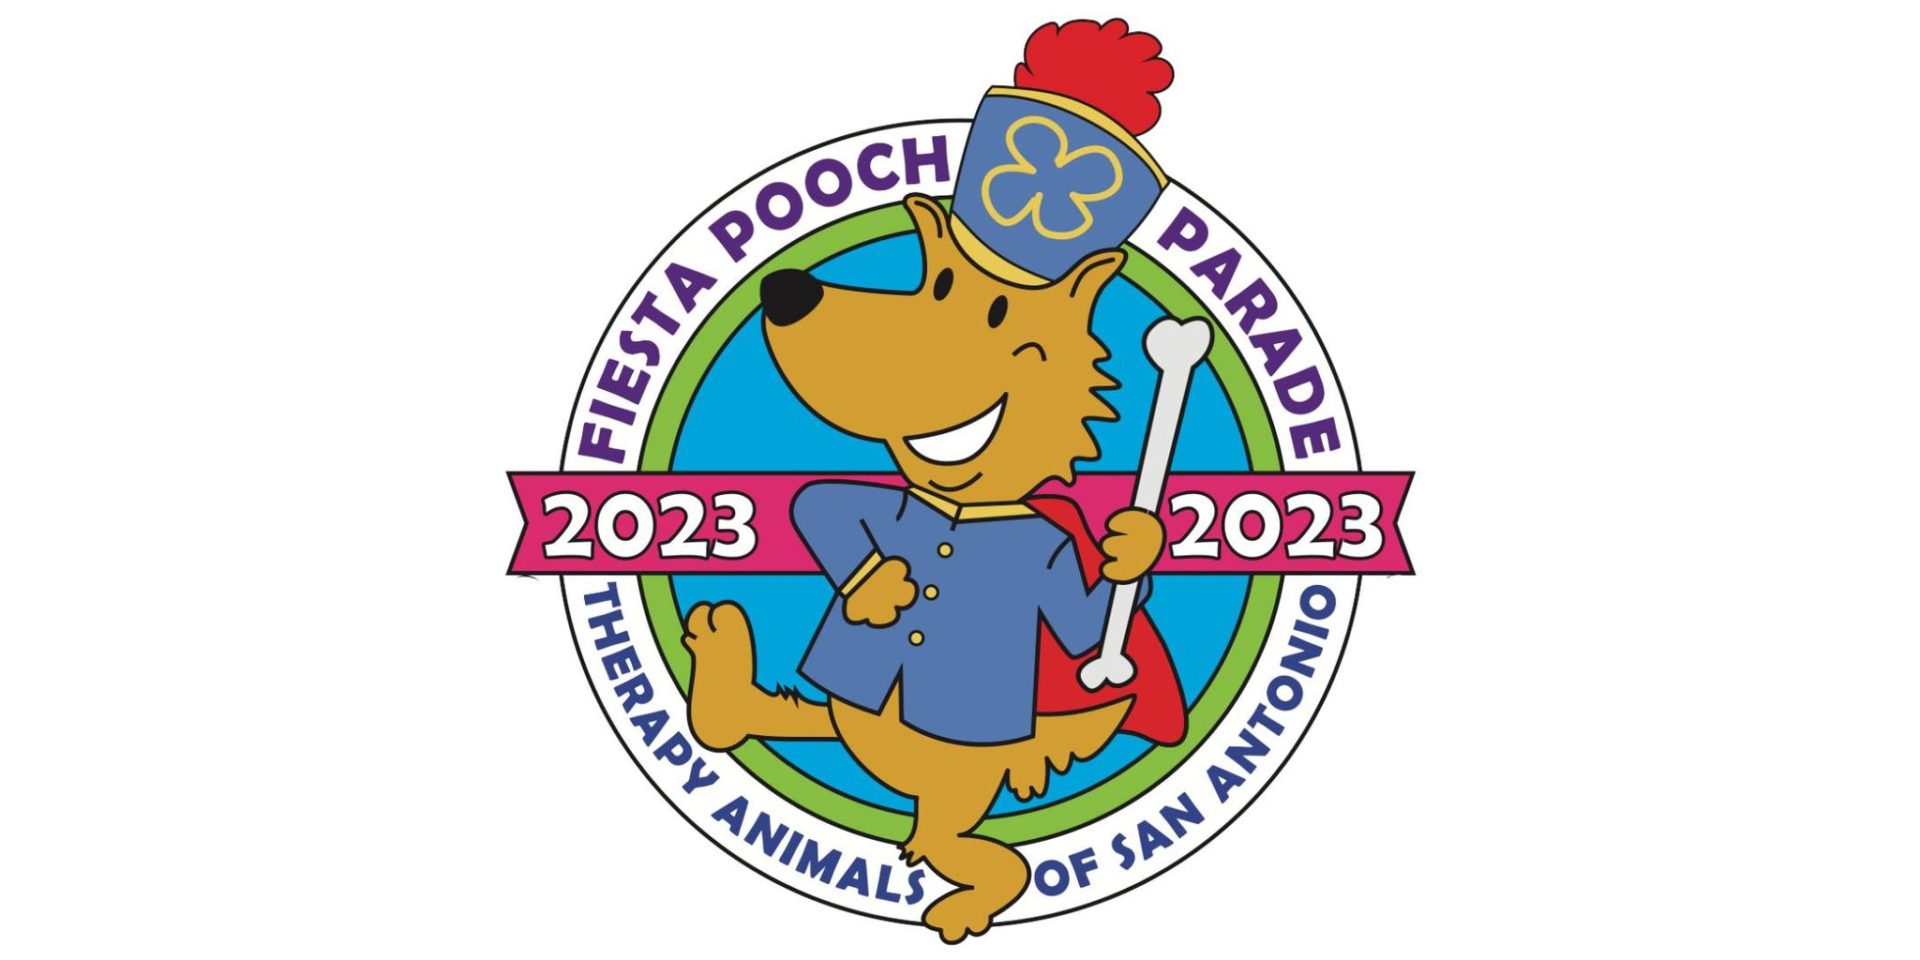 2023 Fiesta Pooch Parade The Dog Guide San Antonio